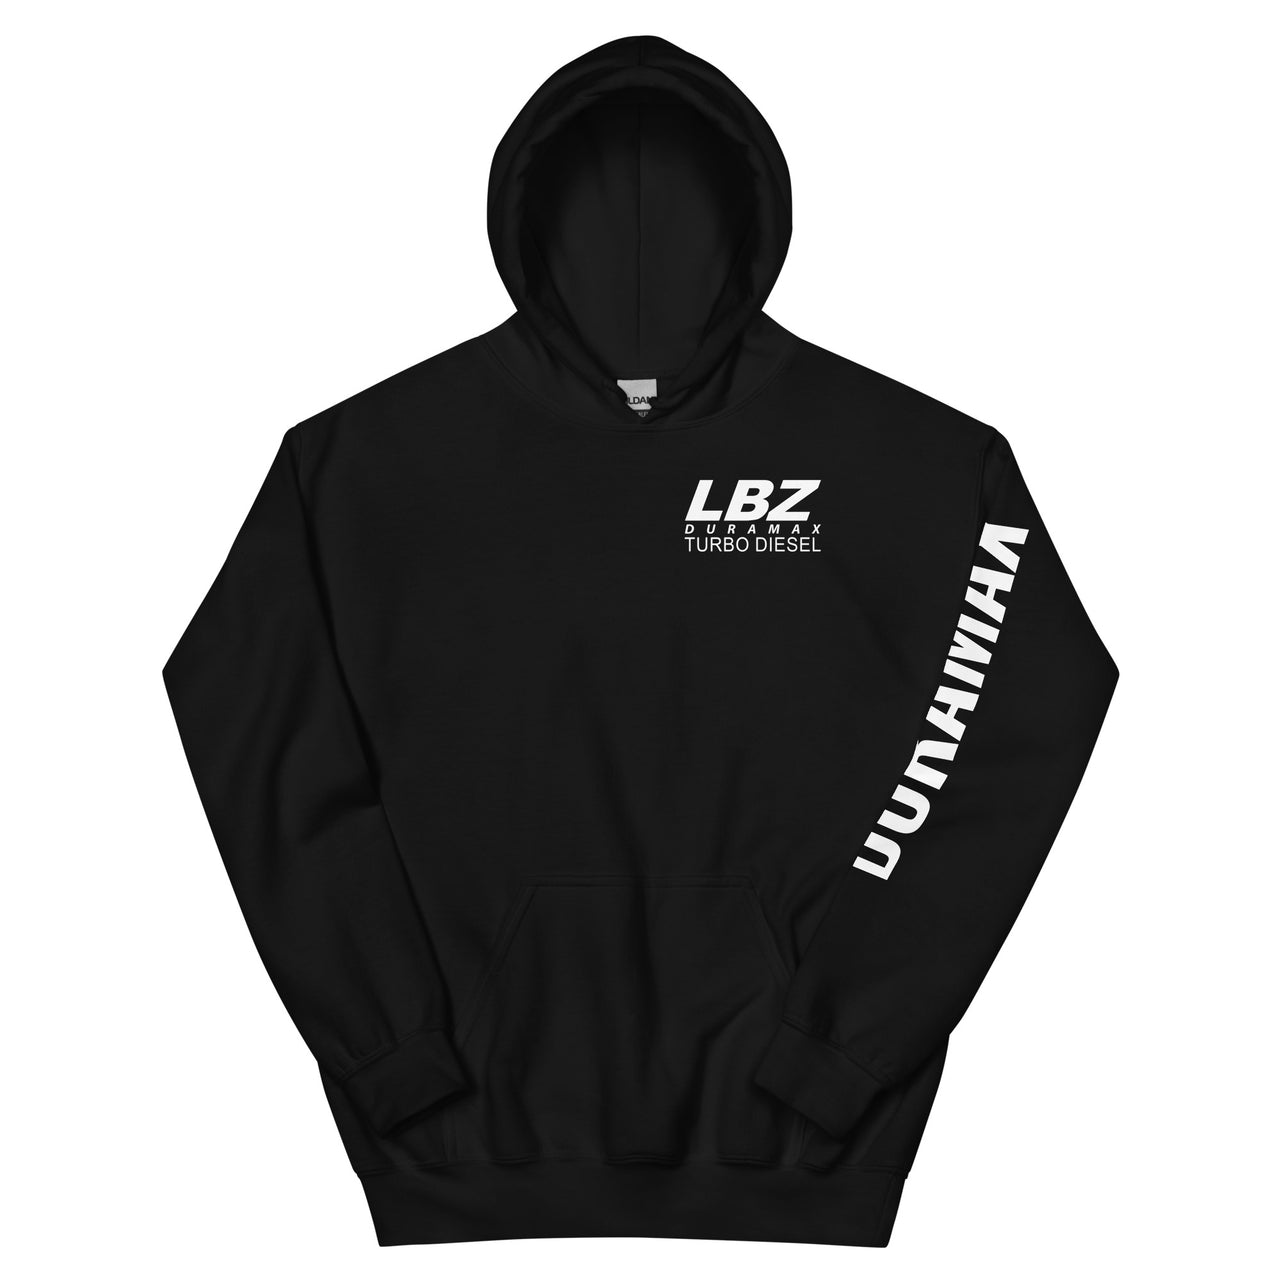 LBZ Duramax Hoodie Pullover Sweatshirt With Sleeve Print in black